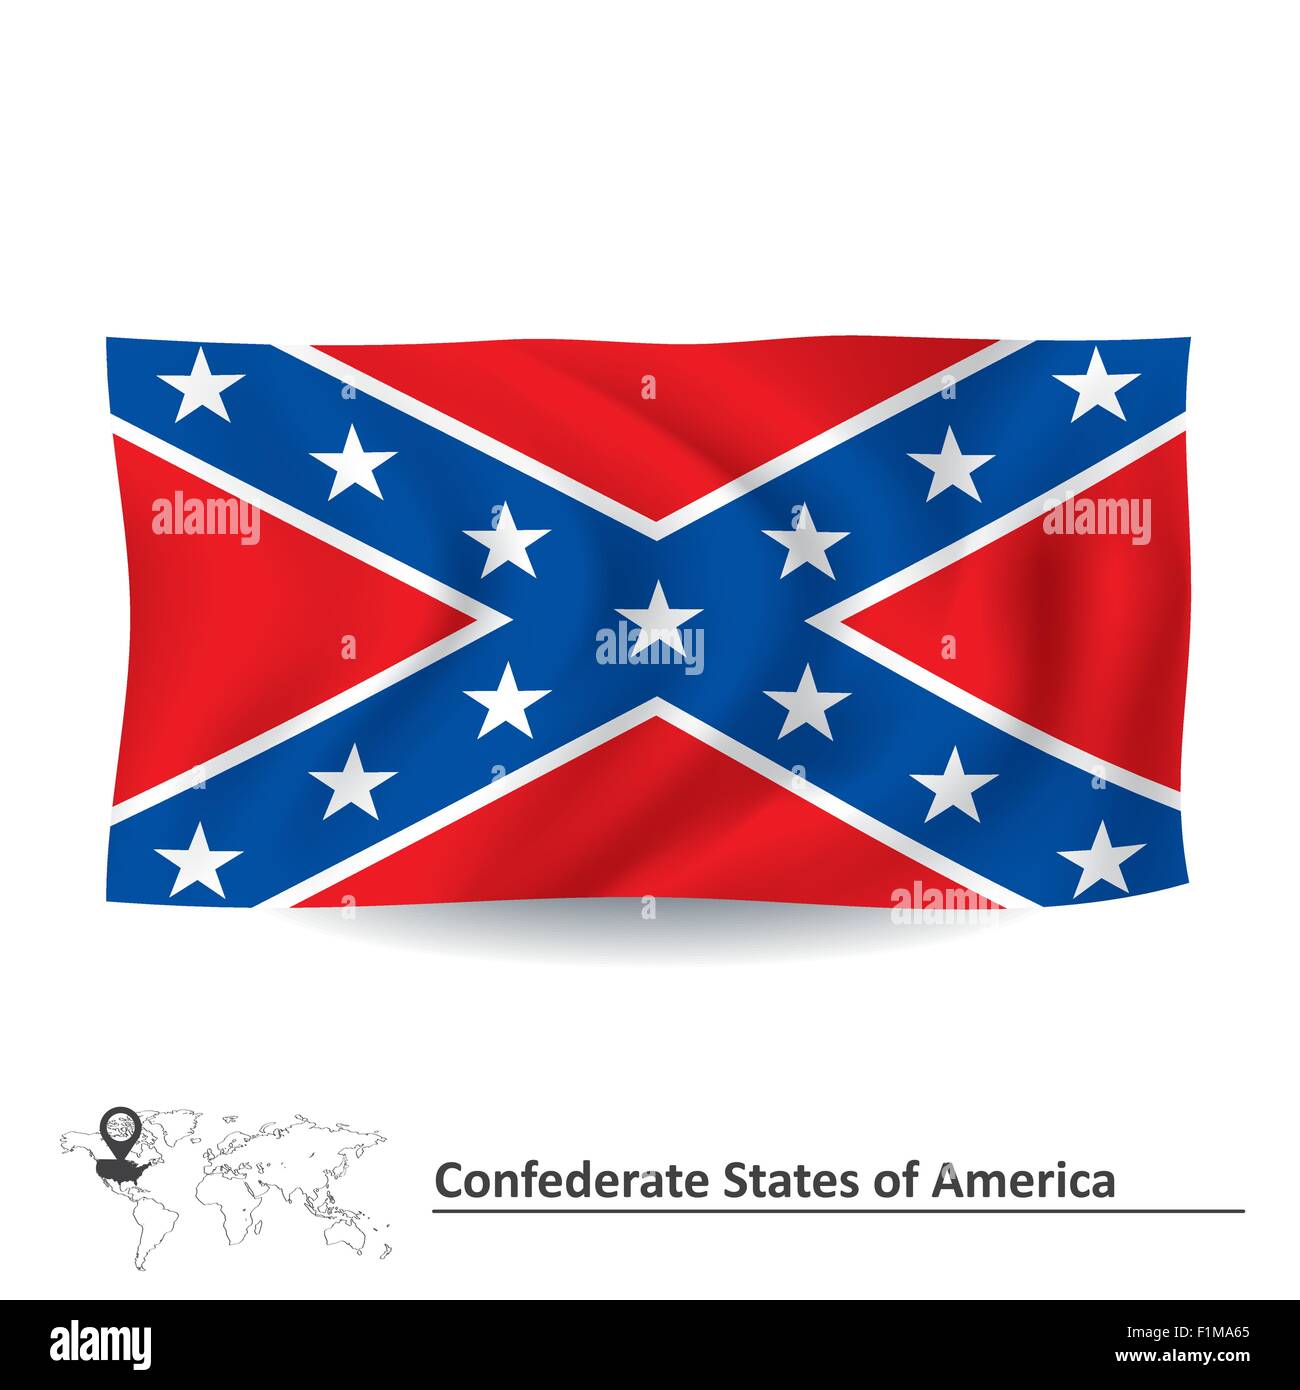 Flagge der Konföderierten Staaten von Amerika - Vektor-illustration Stock Vektor